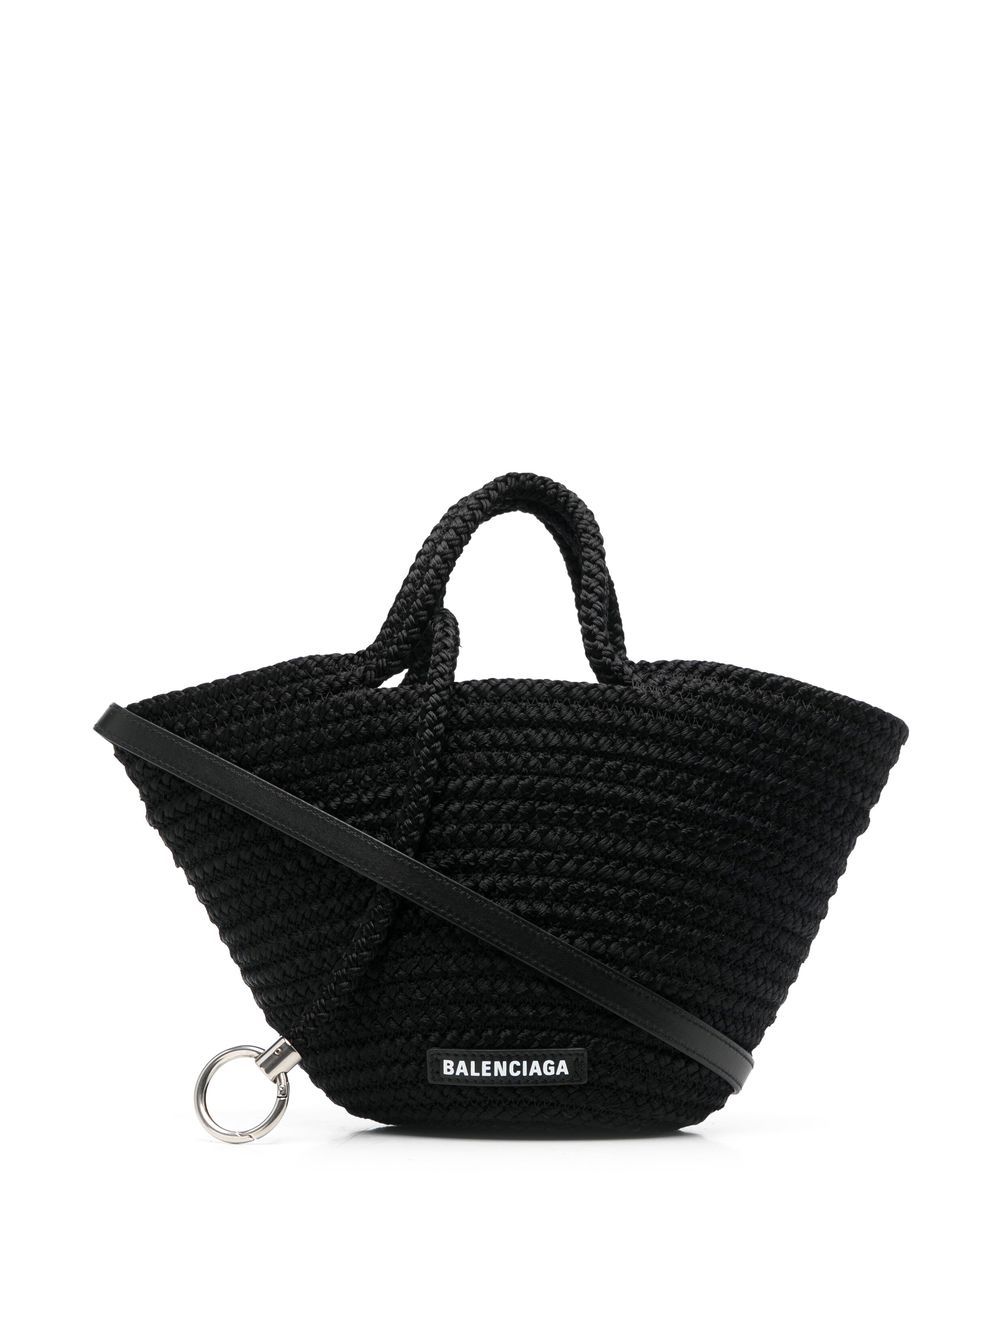 Balenciaga Ibiza woven basket bag - Black